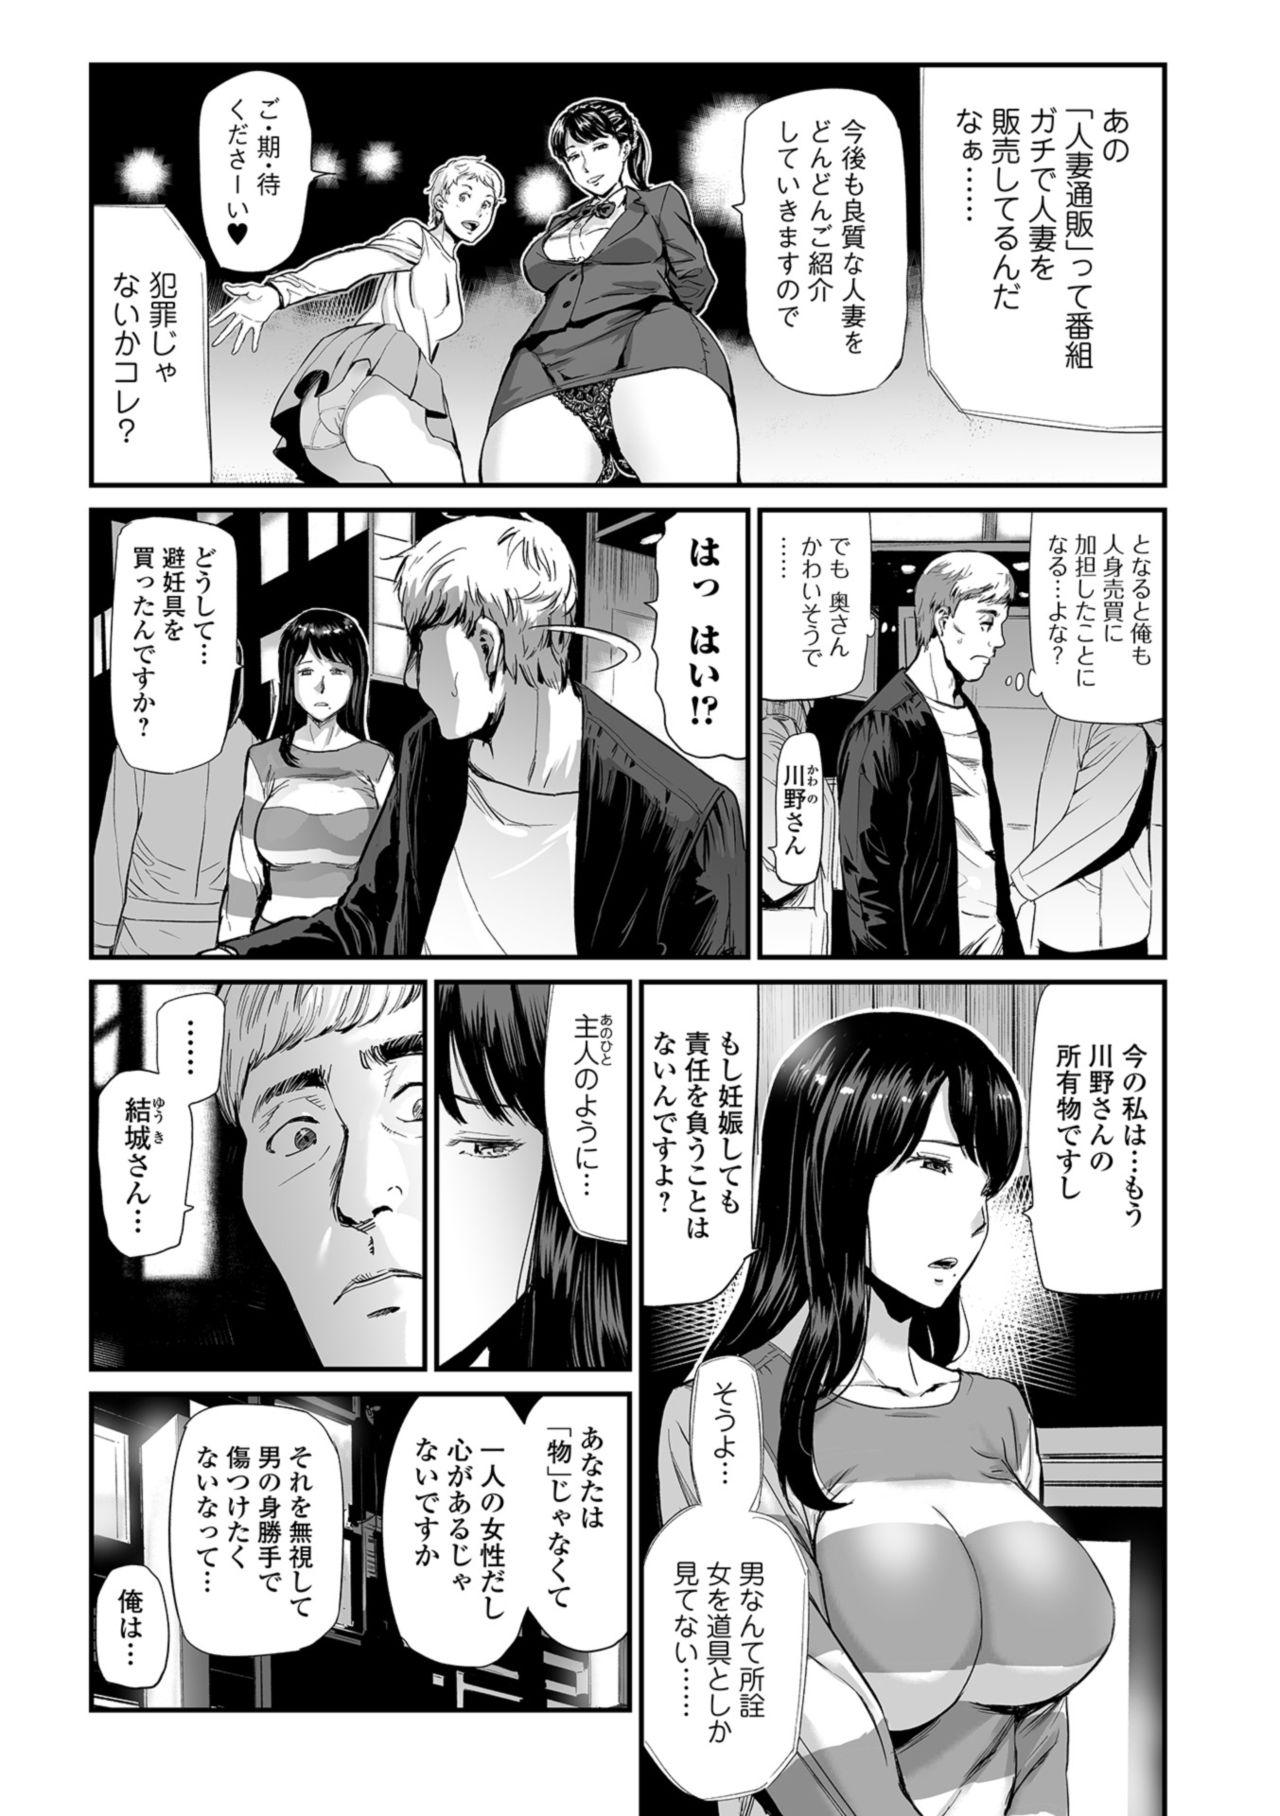 Exgirlfriend Web Comic Toutetsu Vol. 37 Gayemo - Page 5